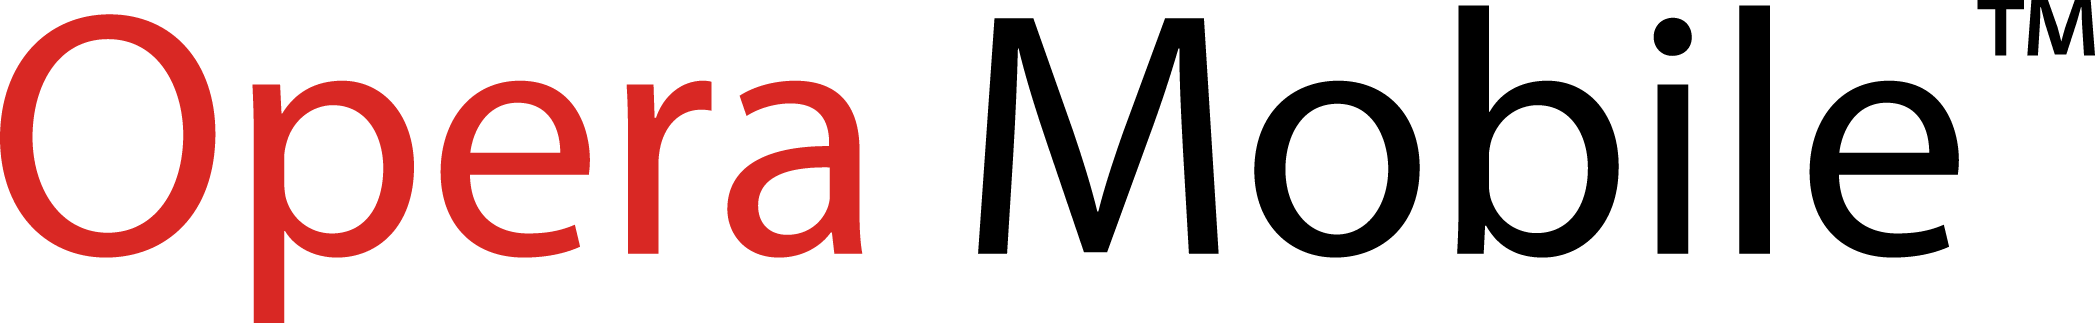 File:Opera browser logo 2013 